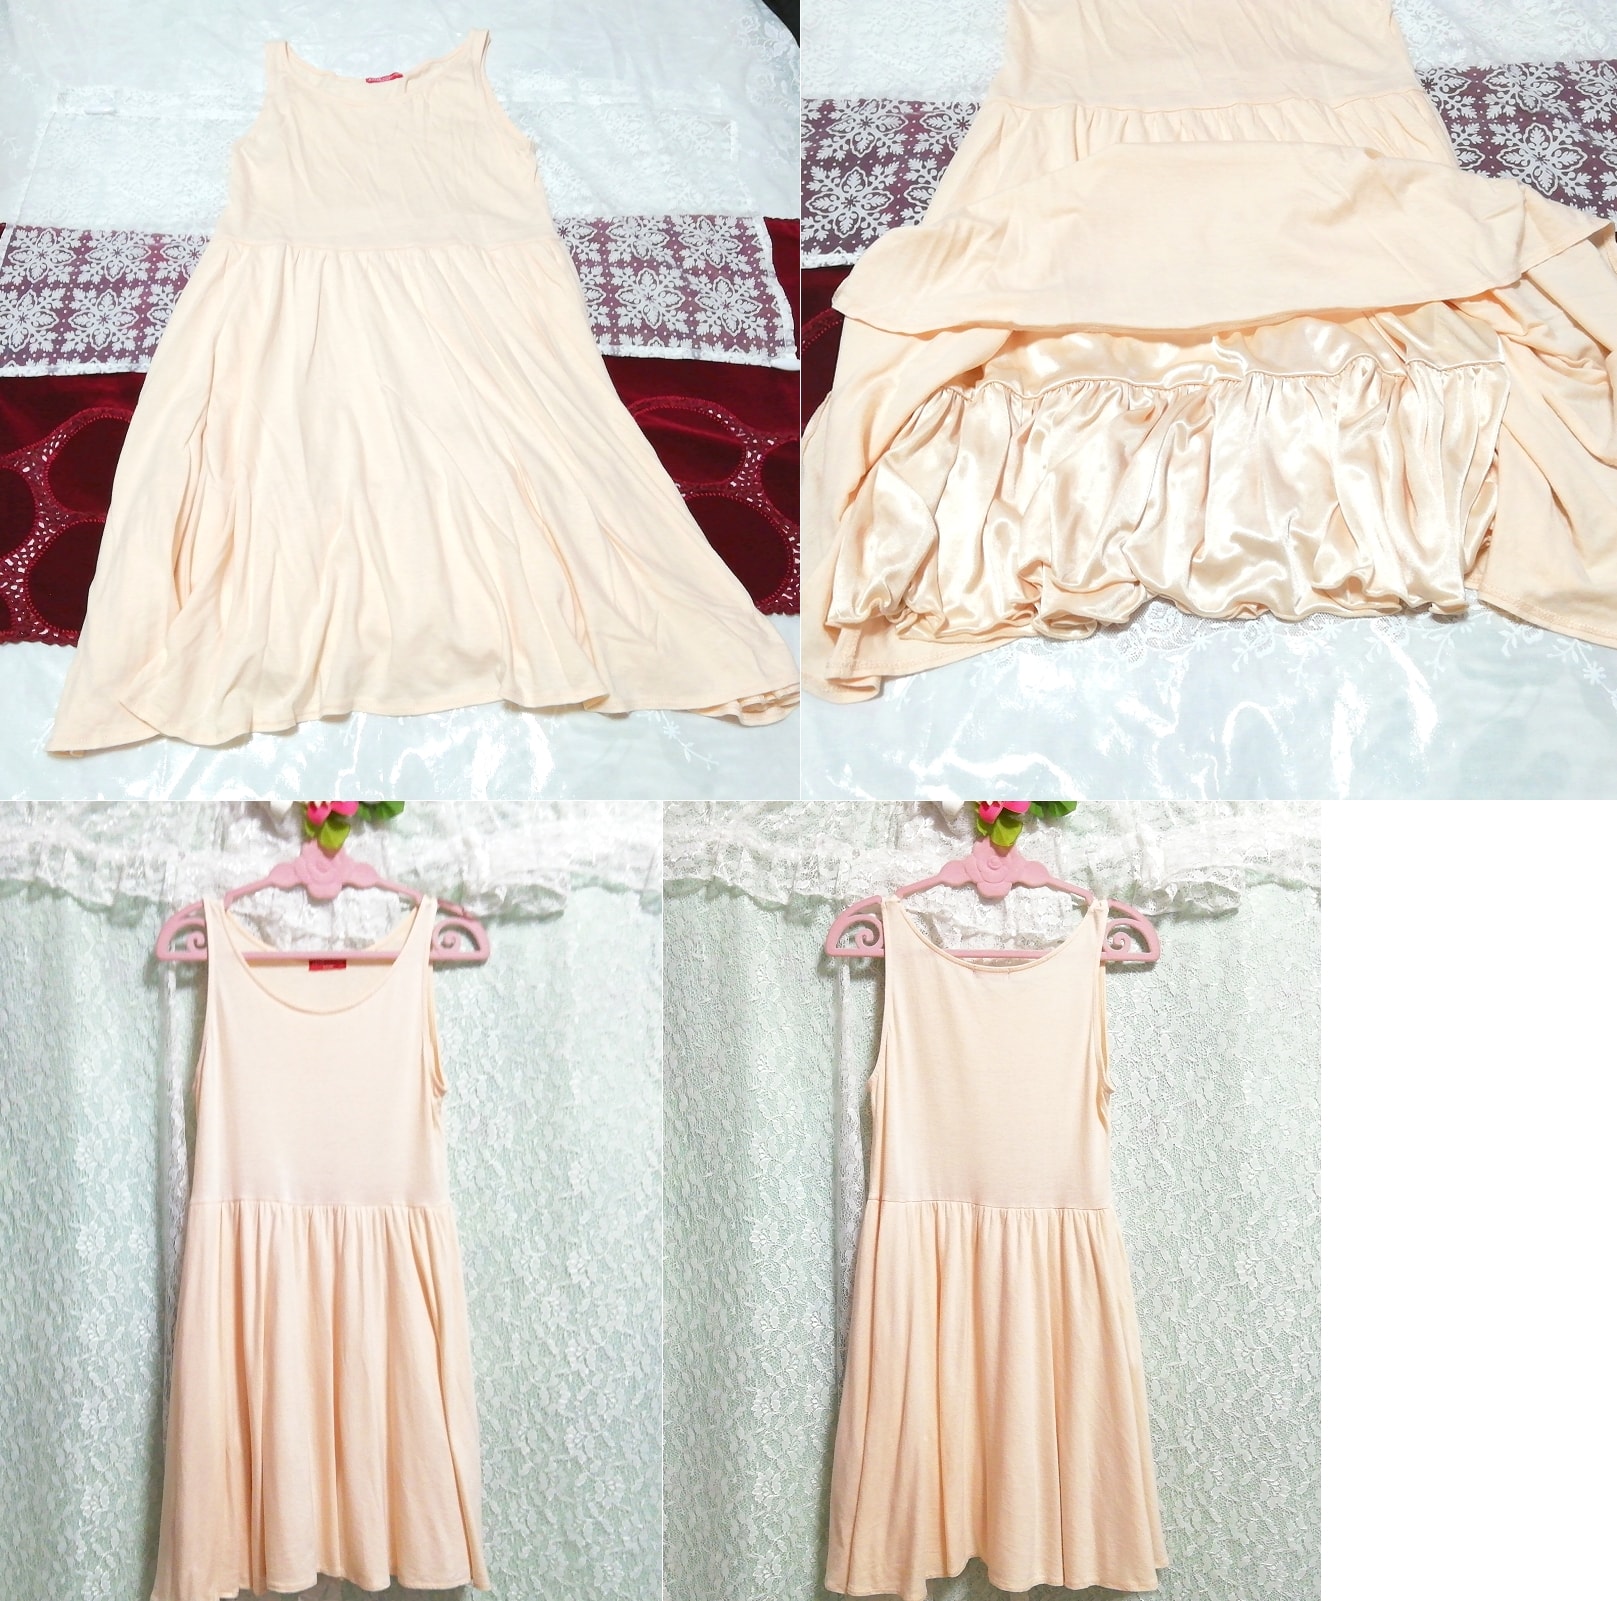 オレンジホワイトネグリジェノースリーブワンピース Orange white negligee sleeveless dress, ワンピース, ひざ丈スカート, Mサイズ